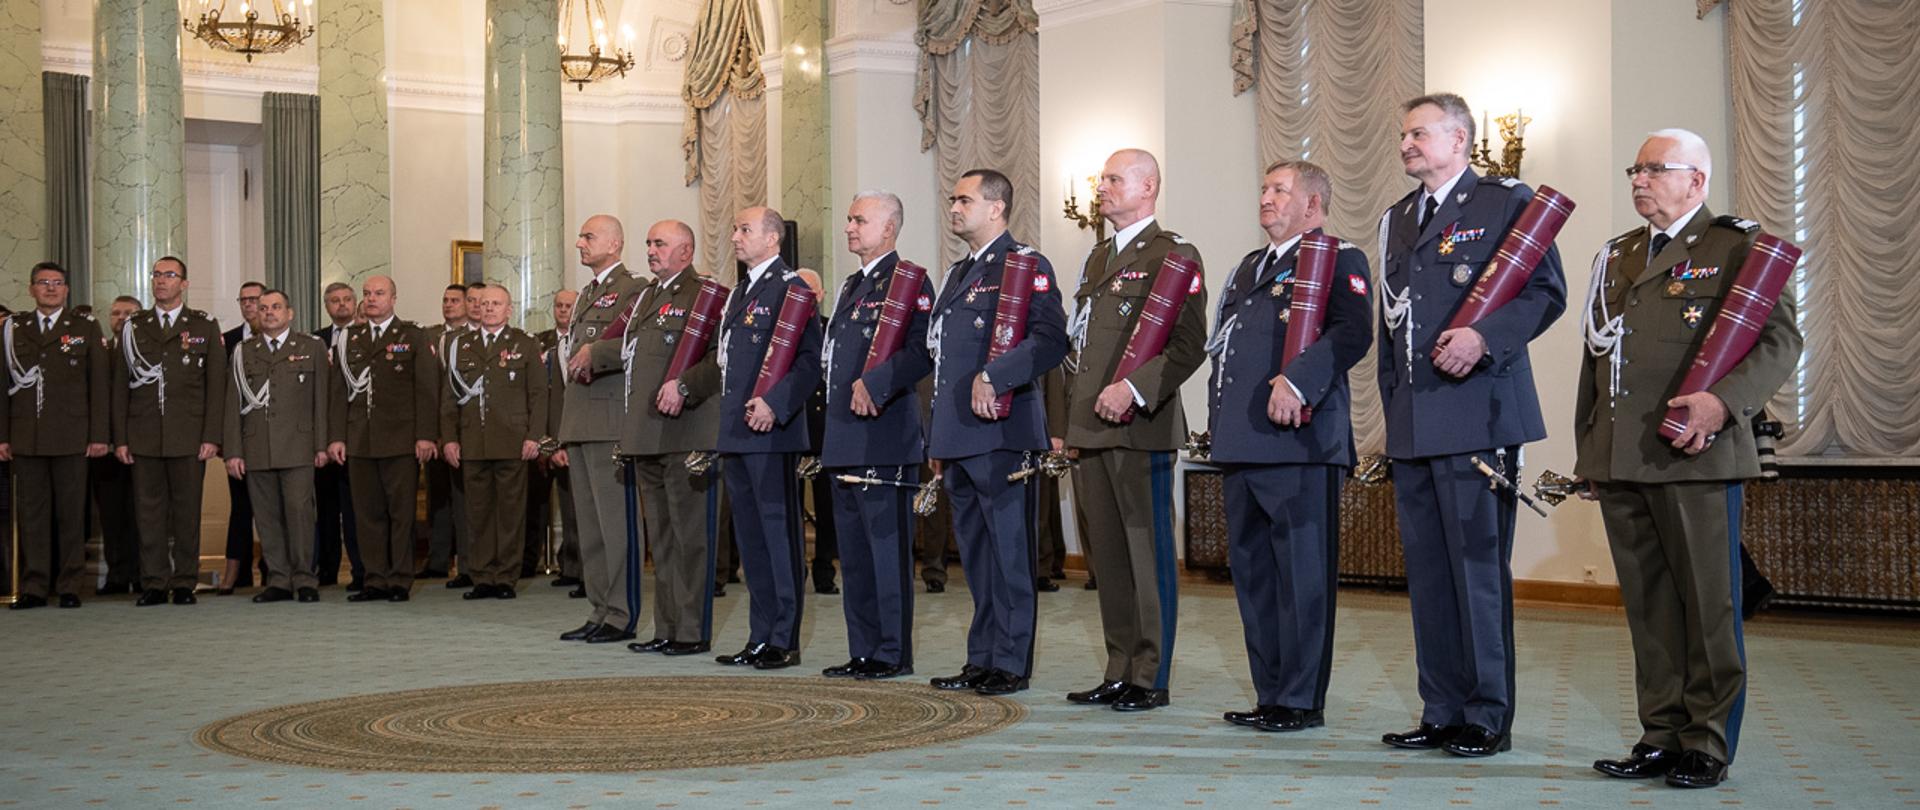 Generałowie odbierający nominacje generalskie w Pałacu Prezydenckim